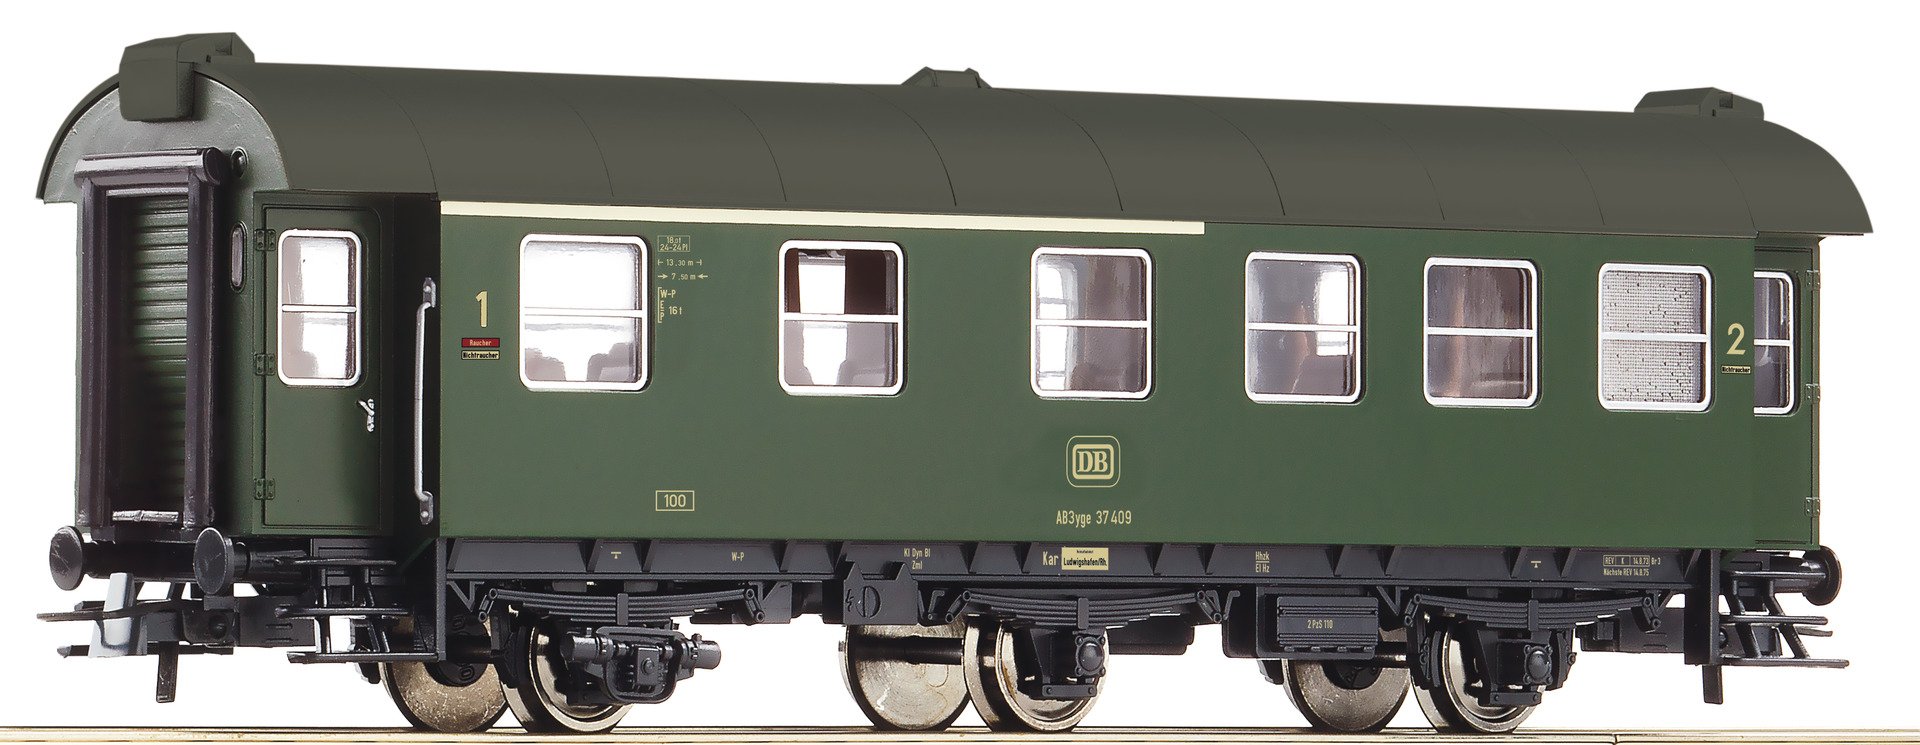 Вагоны 1 22. Roco грузовой вагон, 66097, h0. Roco модель железной дороги h0. Пассажирские вагоны Roco. Roco 73794.